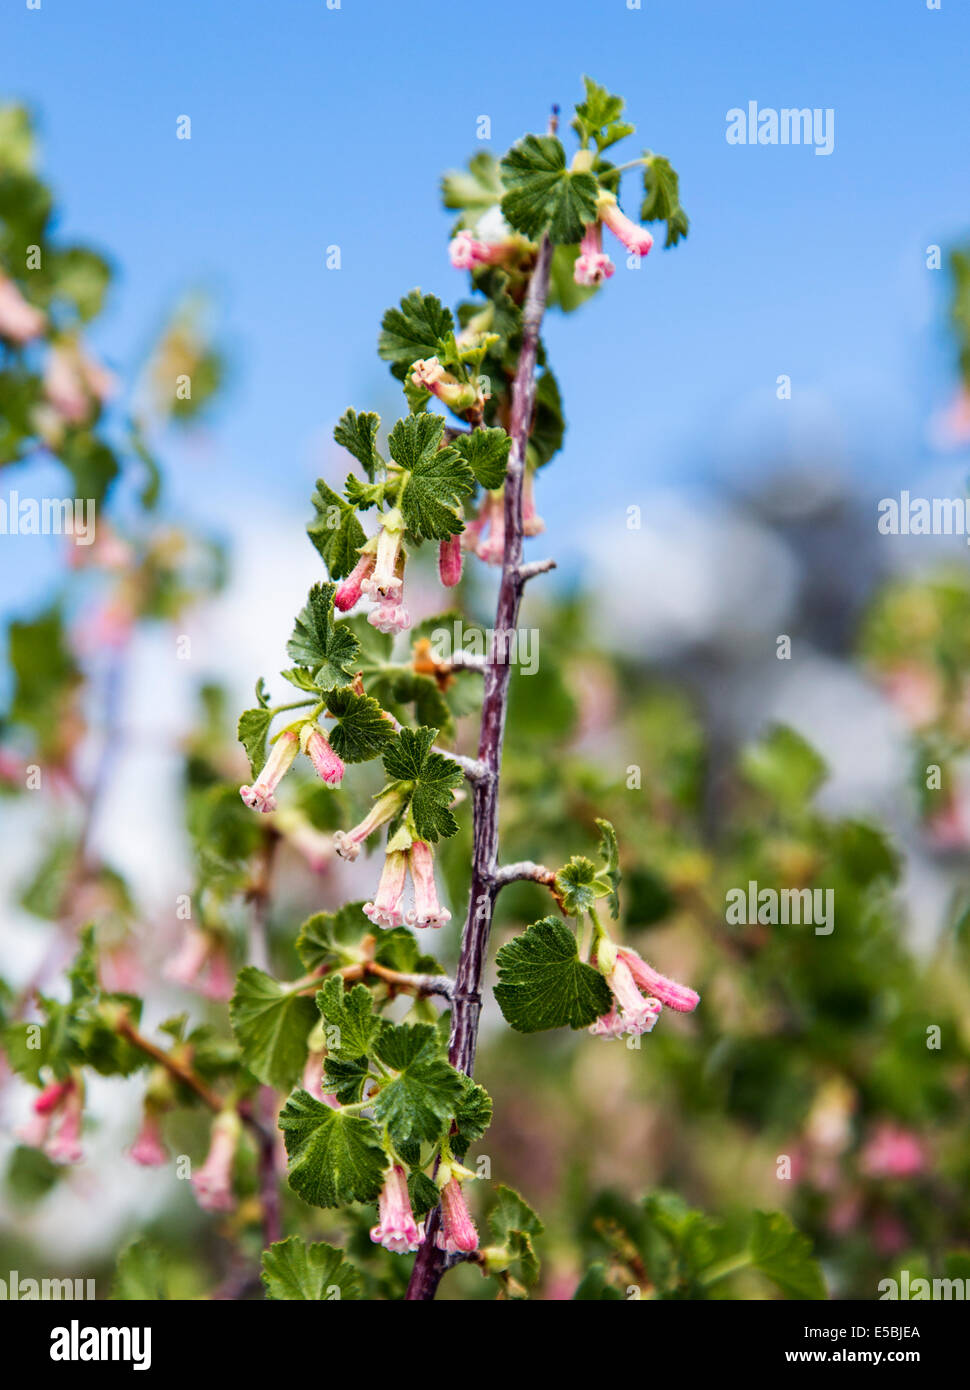 Ribes Cereum; Wachs-Johannisbeere; Grossulariaceae; Stachelbeere, Wildblumen blühen im Frühling Schnee, zentralen Colorado, USA Stockfoto